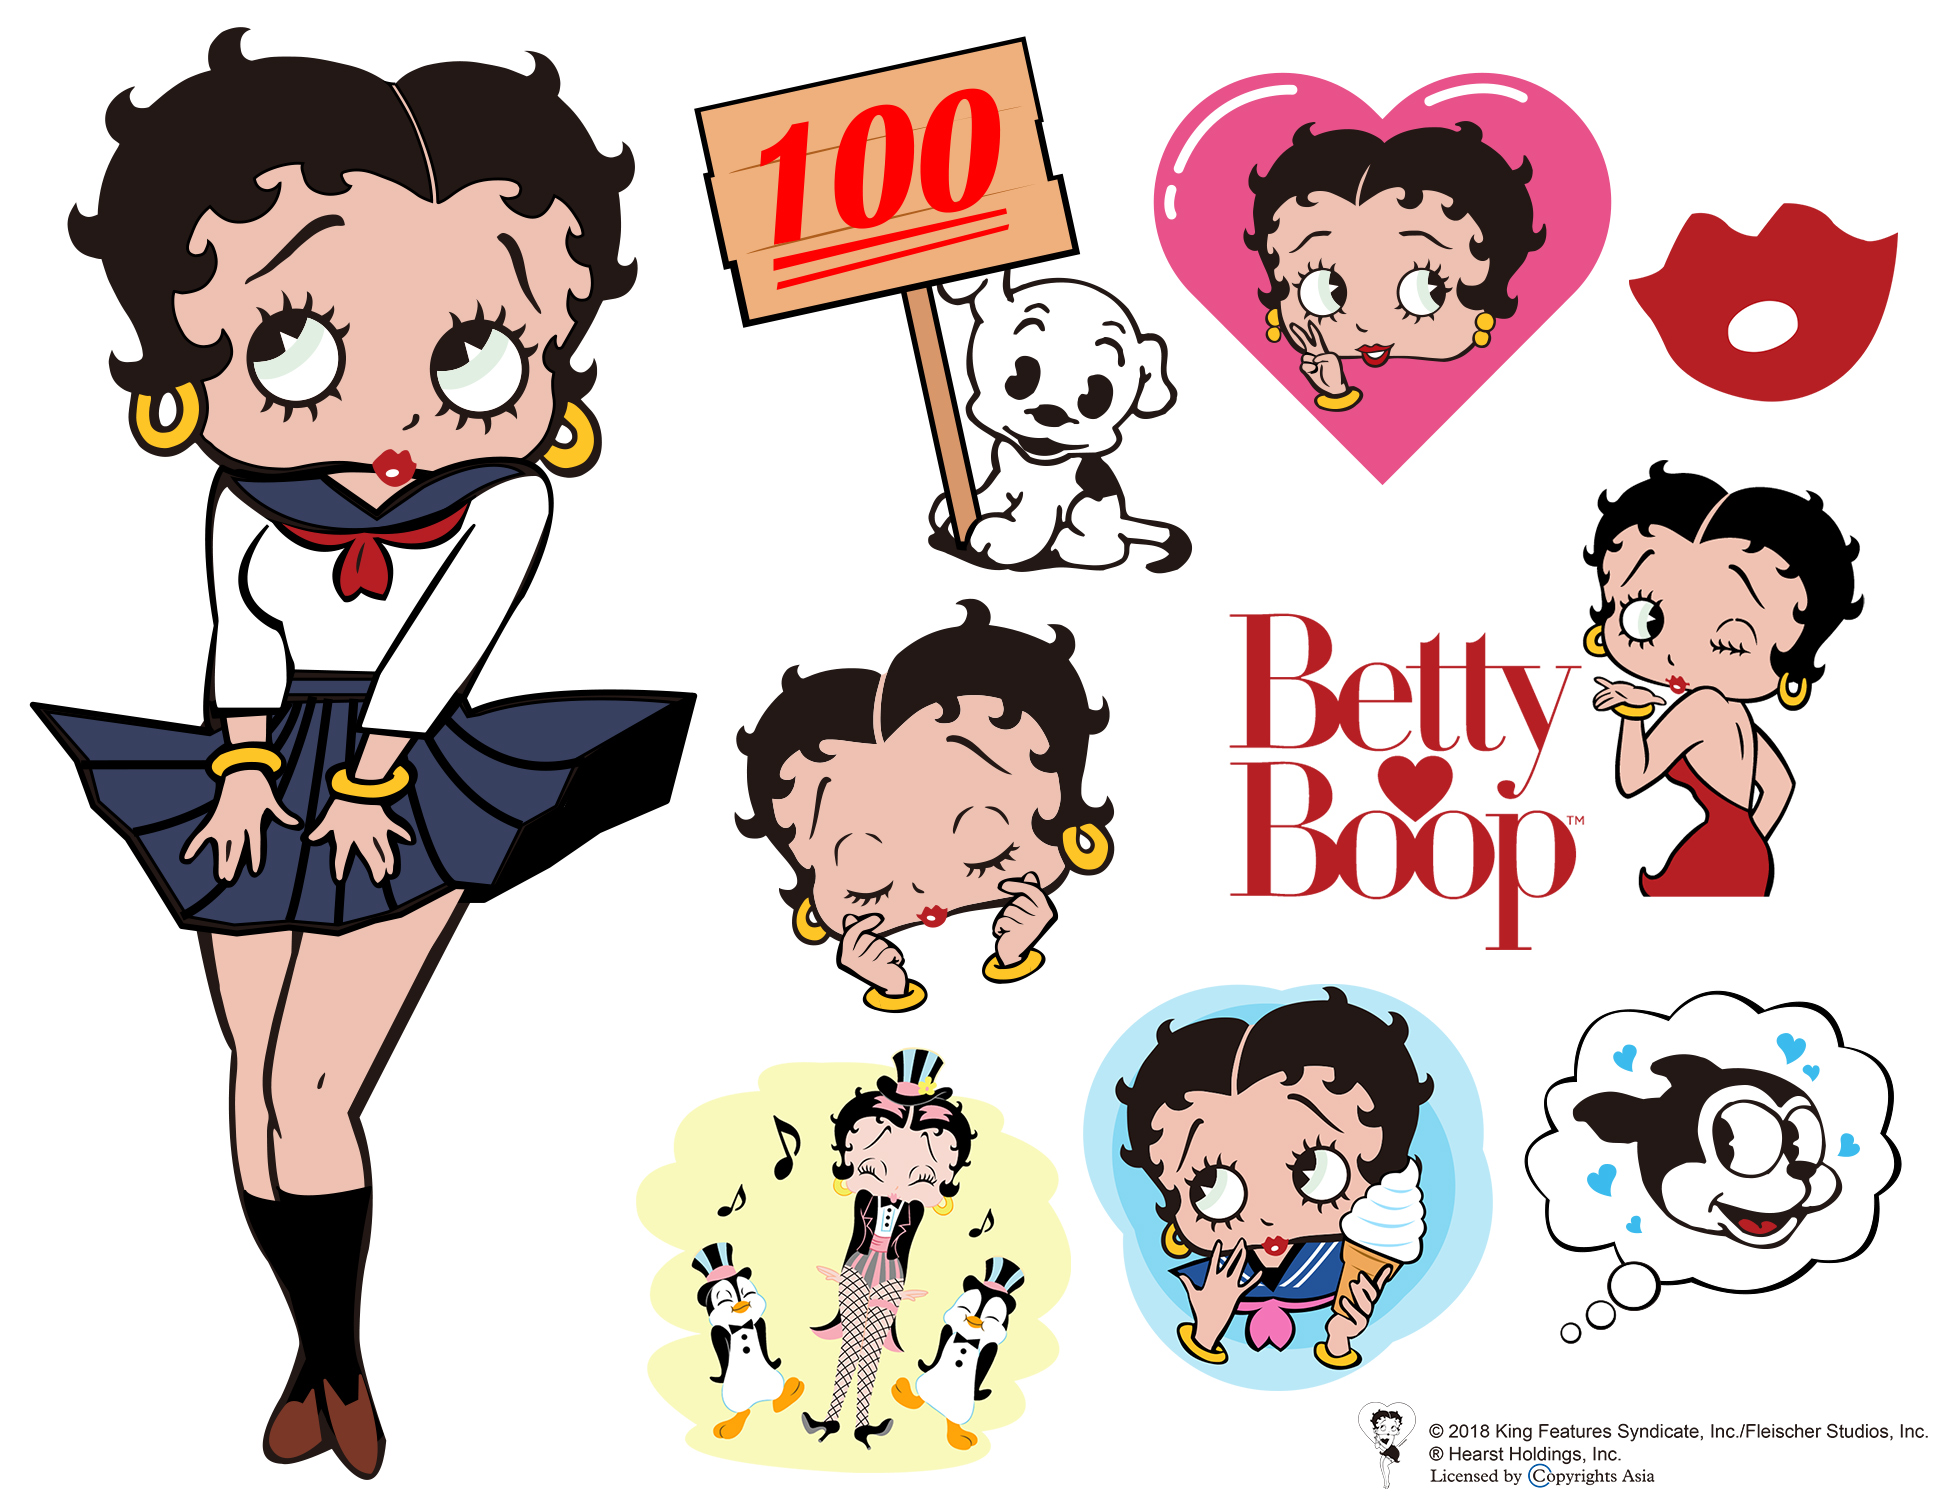 フリュー株式会社 プリントシール機事業サイト アメリカ生まれの人気キャラクター Betty Boop と 最新プリントシール機 トキメキルール が期間限定コラボ